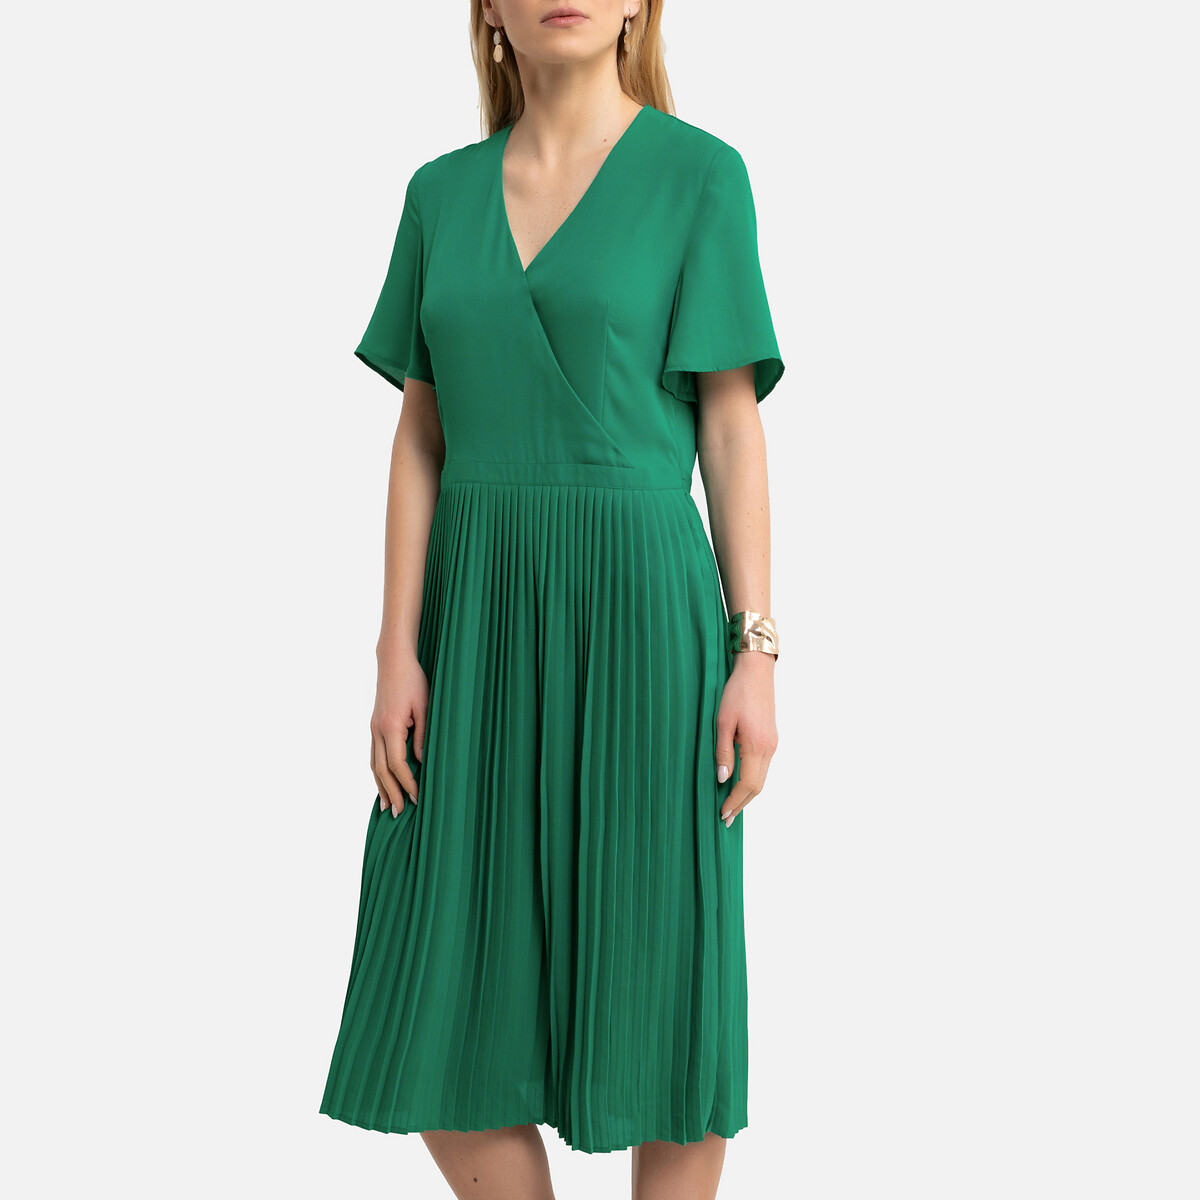 Платье-миди LaRedoute Плиссированное с короткими рукавами 38 (FR) - 44 (RUS) зеленый, размер 38 (FR) - 44 (RUS) Плиссированное с короткими рукавами 38 (FR) - 44 (RUS) зеленый - фото 1